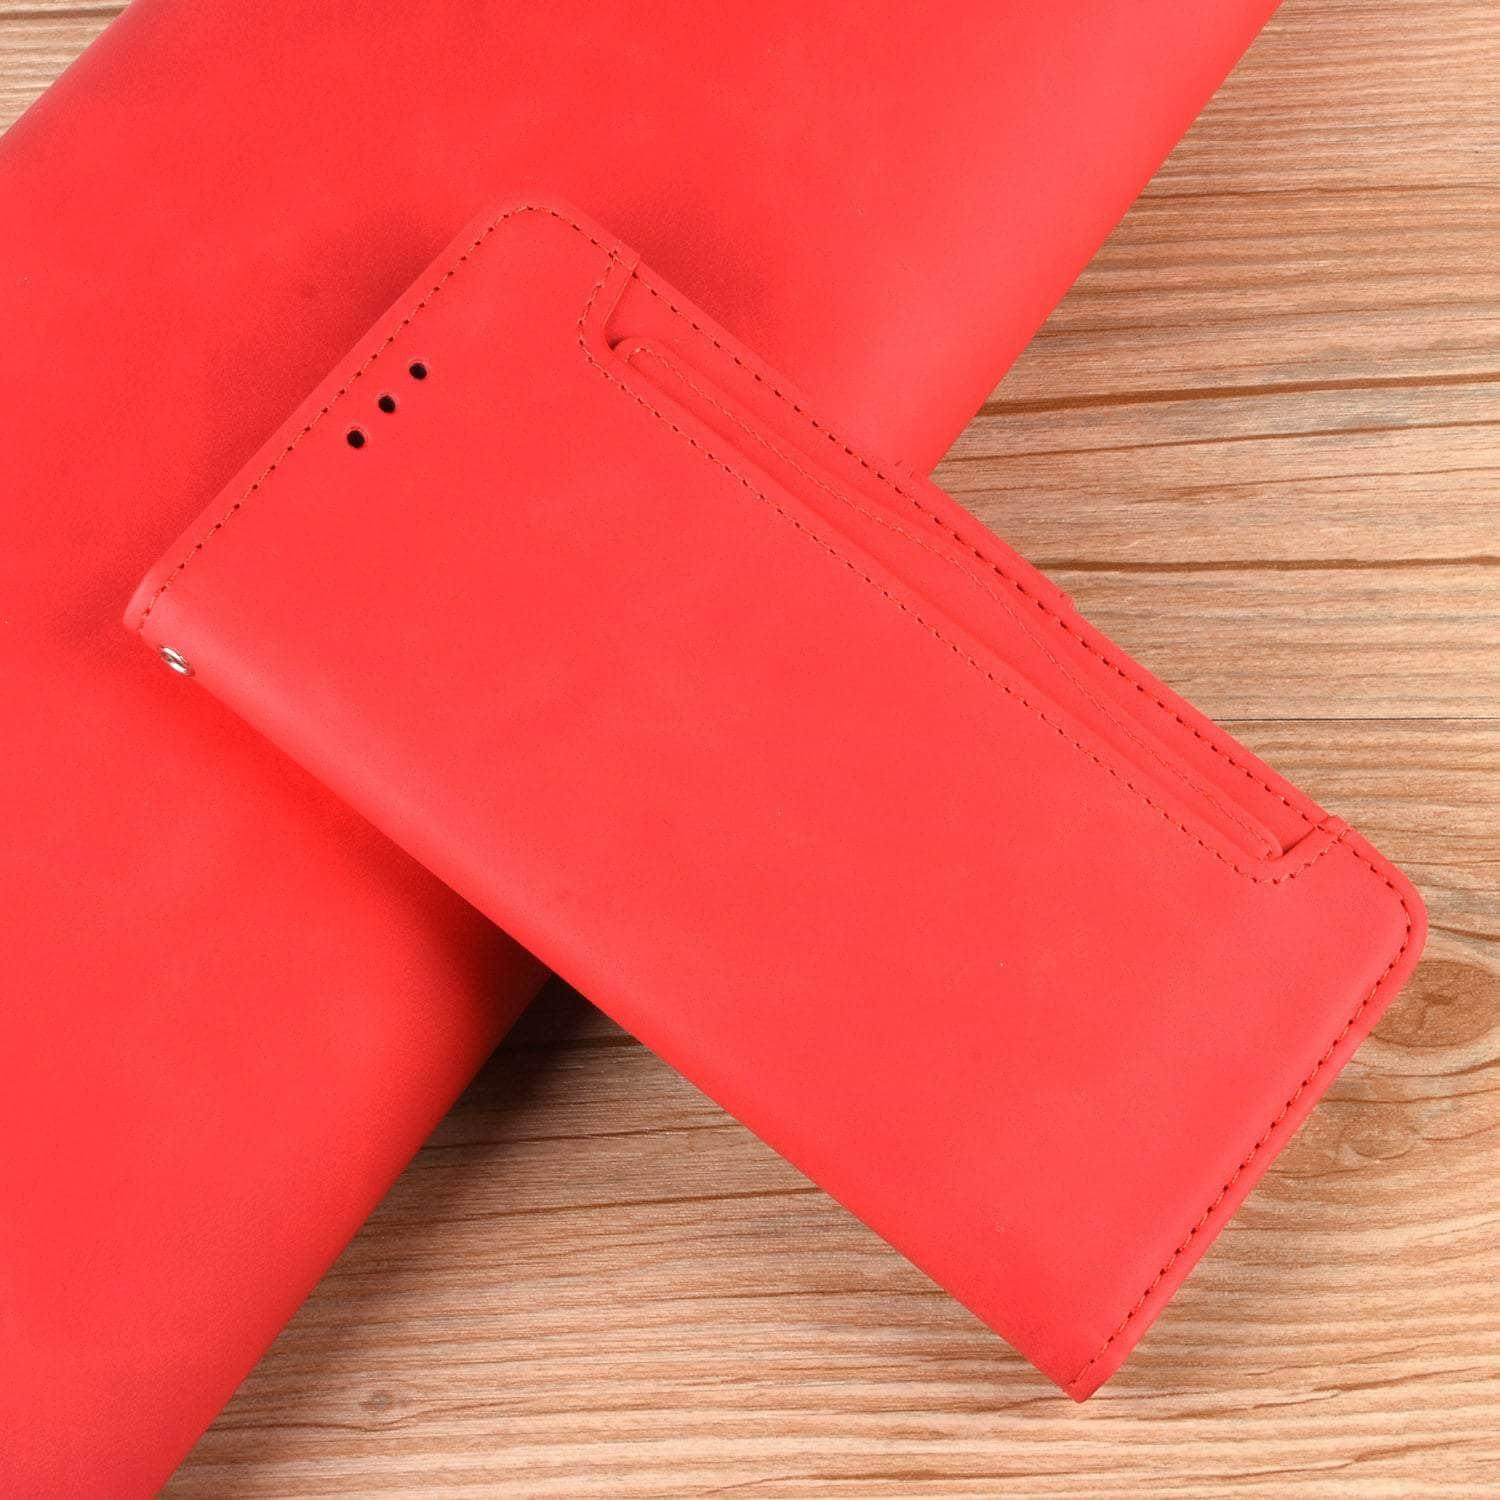 Casebuddy Vegan Leather Galaxy Z Fold 3 Pen Slot Case